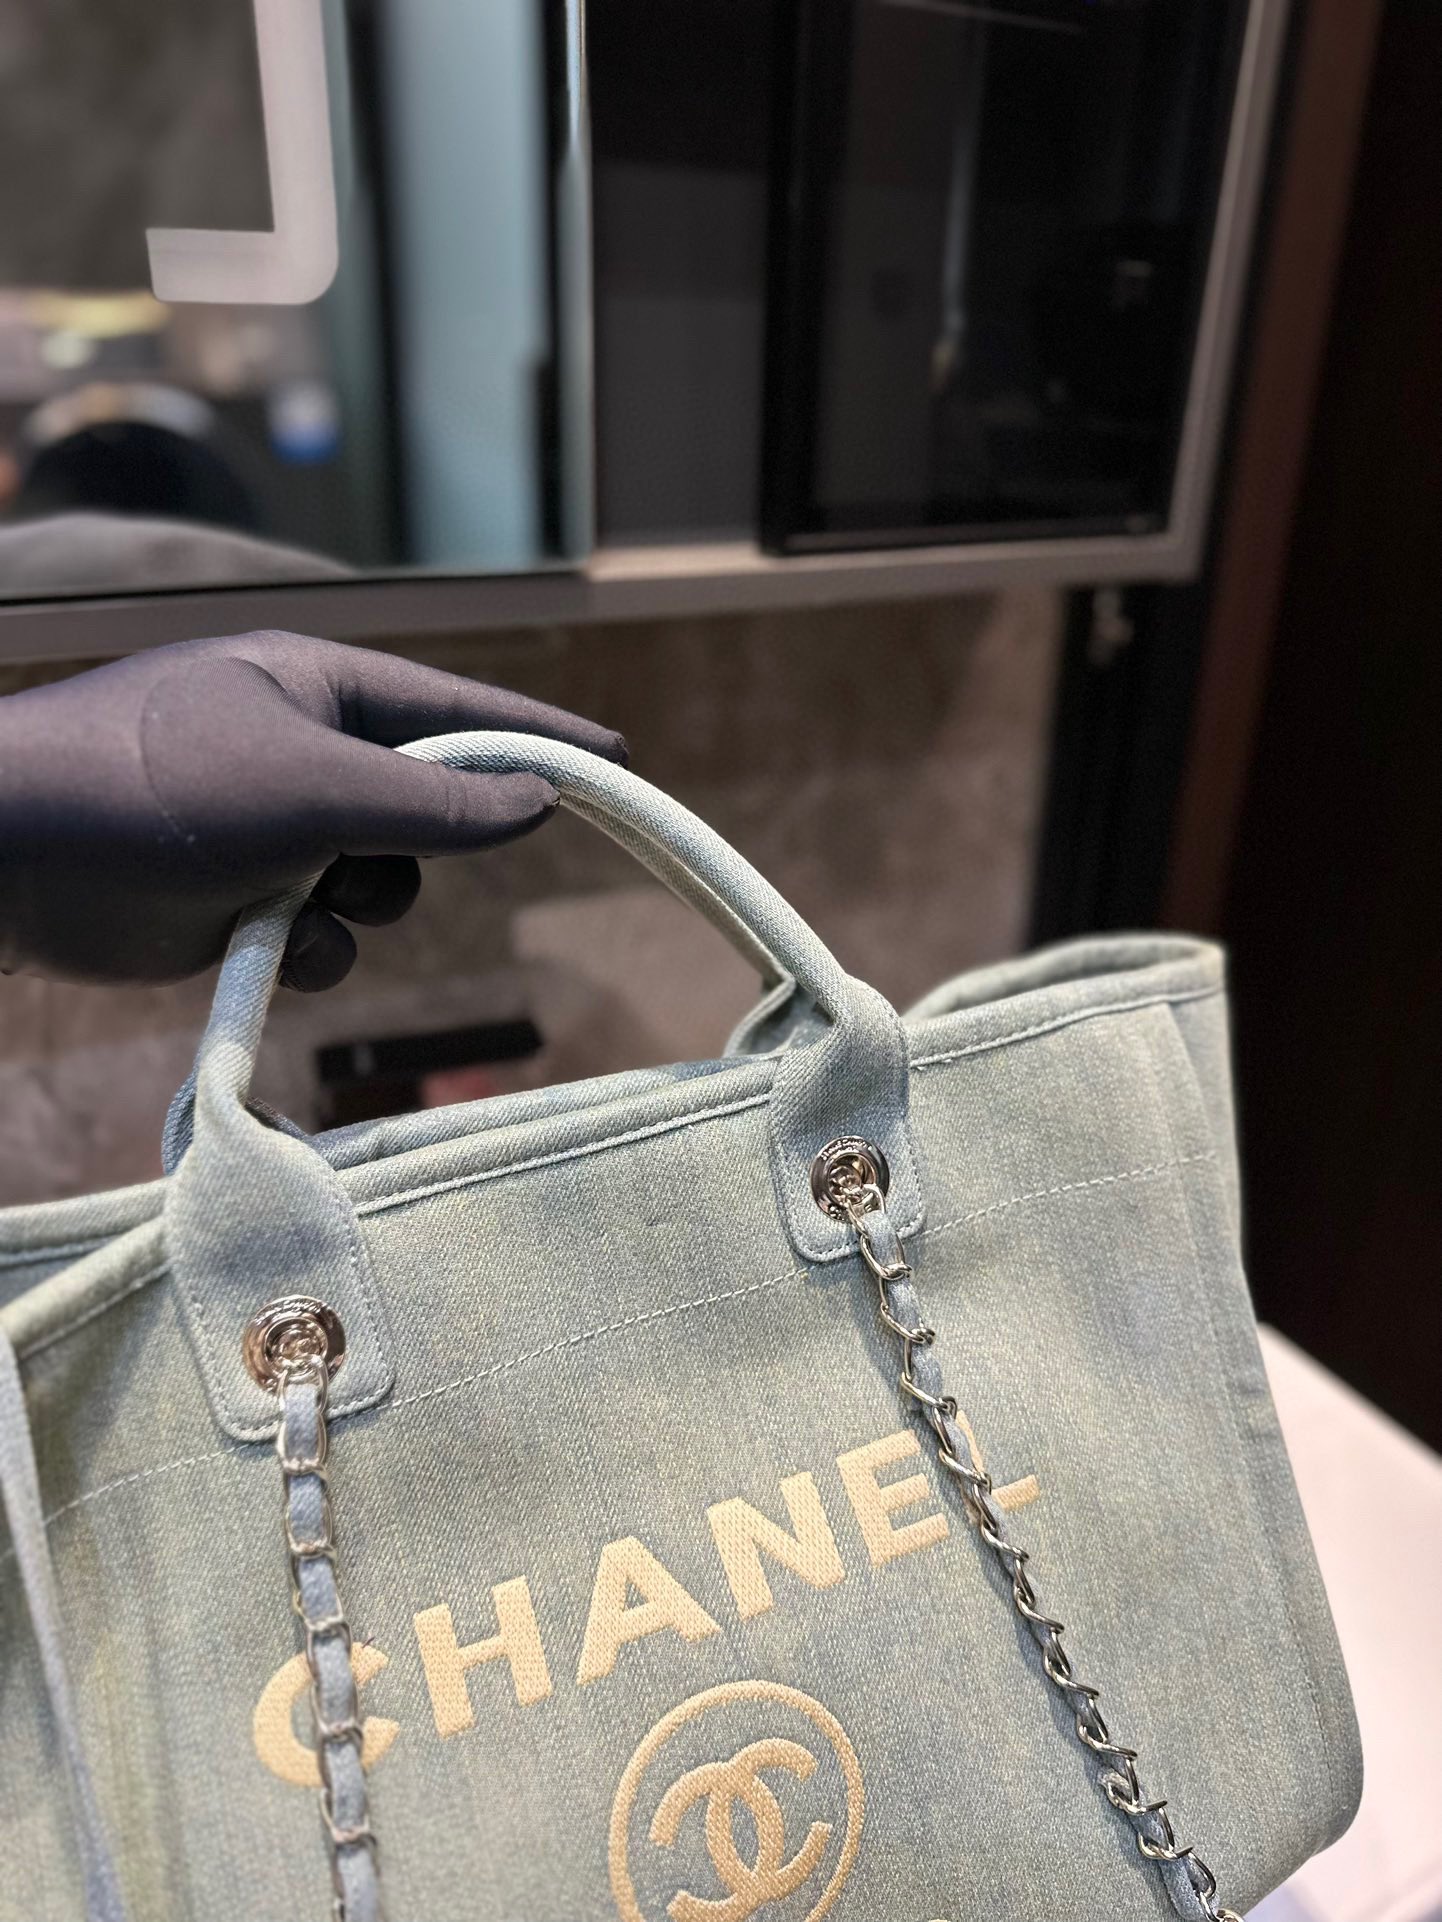 高品质 Chanel 新款香奈儿沙滩包购物袋 Chanel沙滩包每年都会出新的款 跟老款不同的logo装饰更加高端大气 容量超级可妈咪包 简约休闲的设计深受欢迎